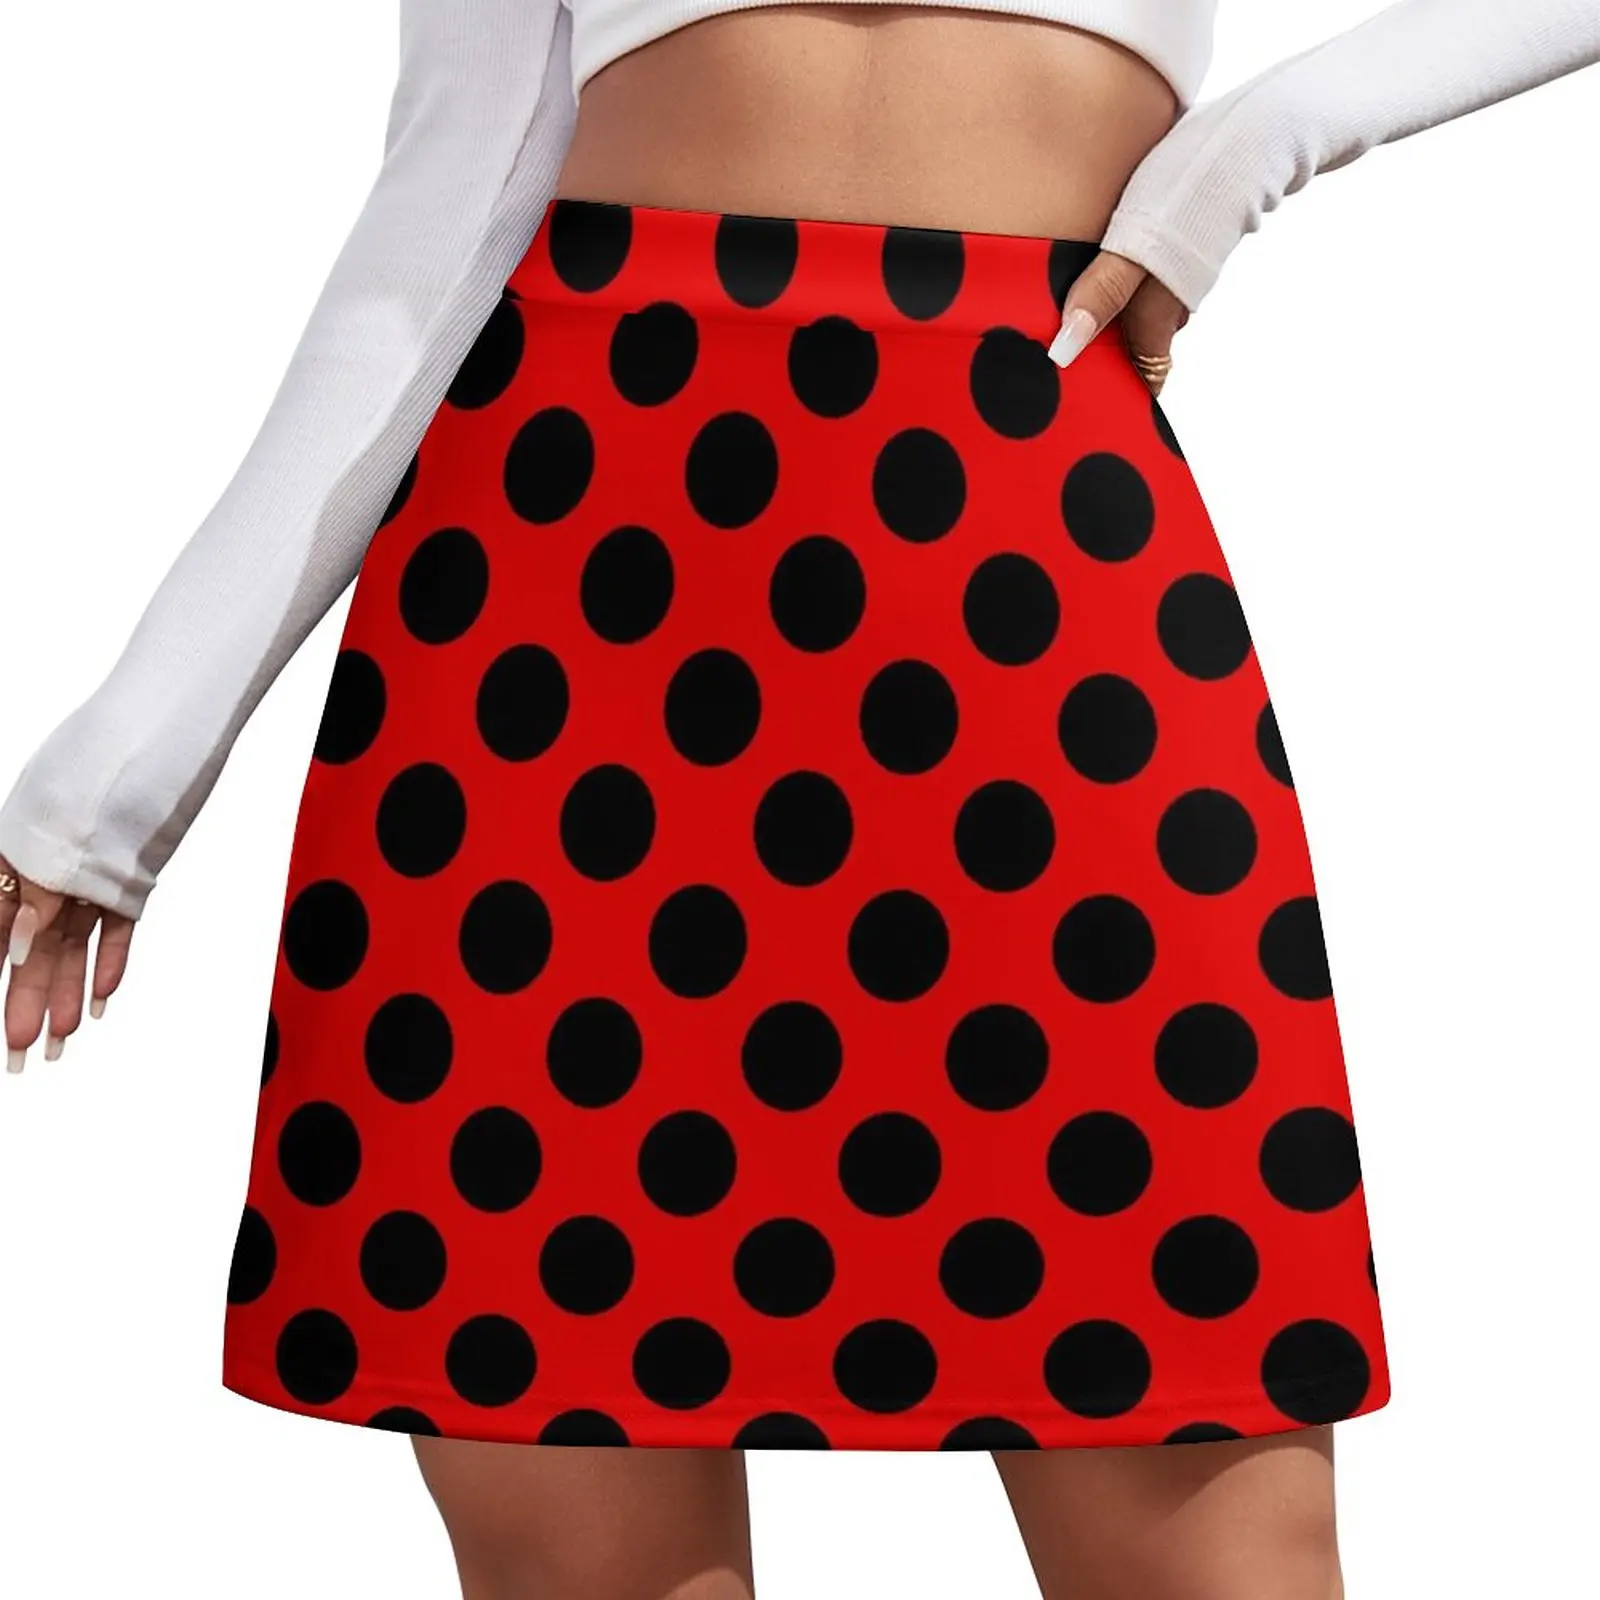 Big Red Polka Dot Print Design Mini Skirt korean style skirt Skirt pants